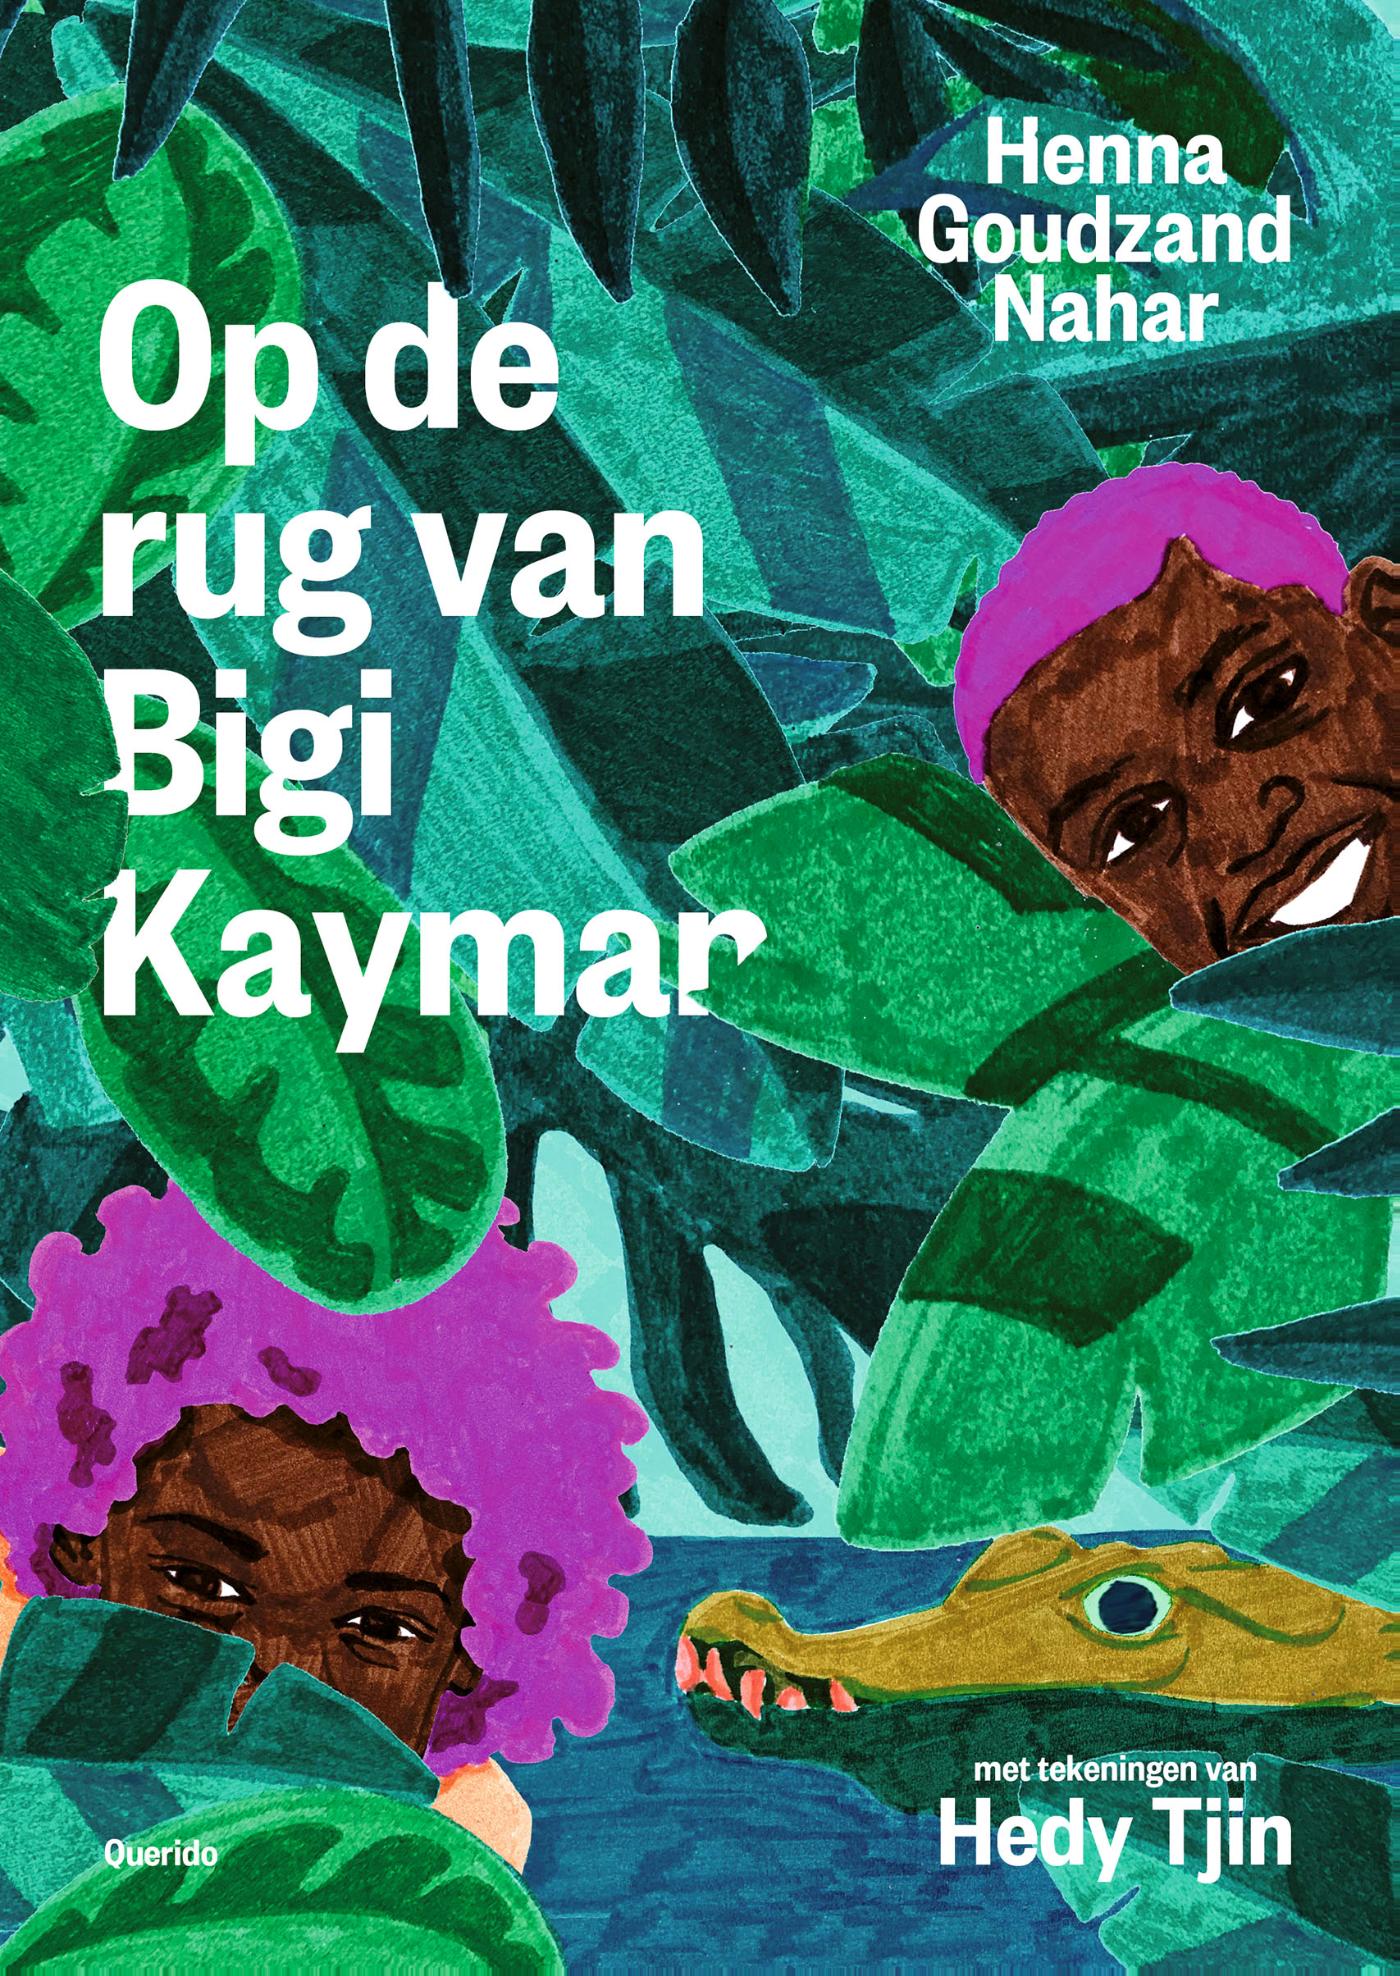 De Utrechtse Kinderboekwinkel